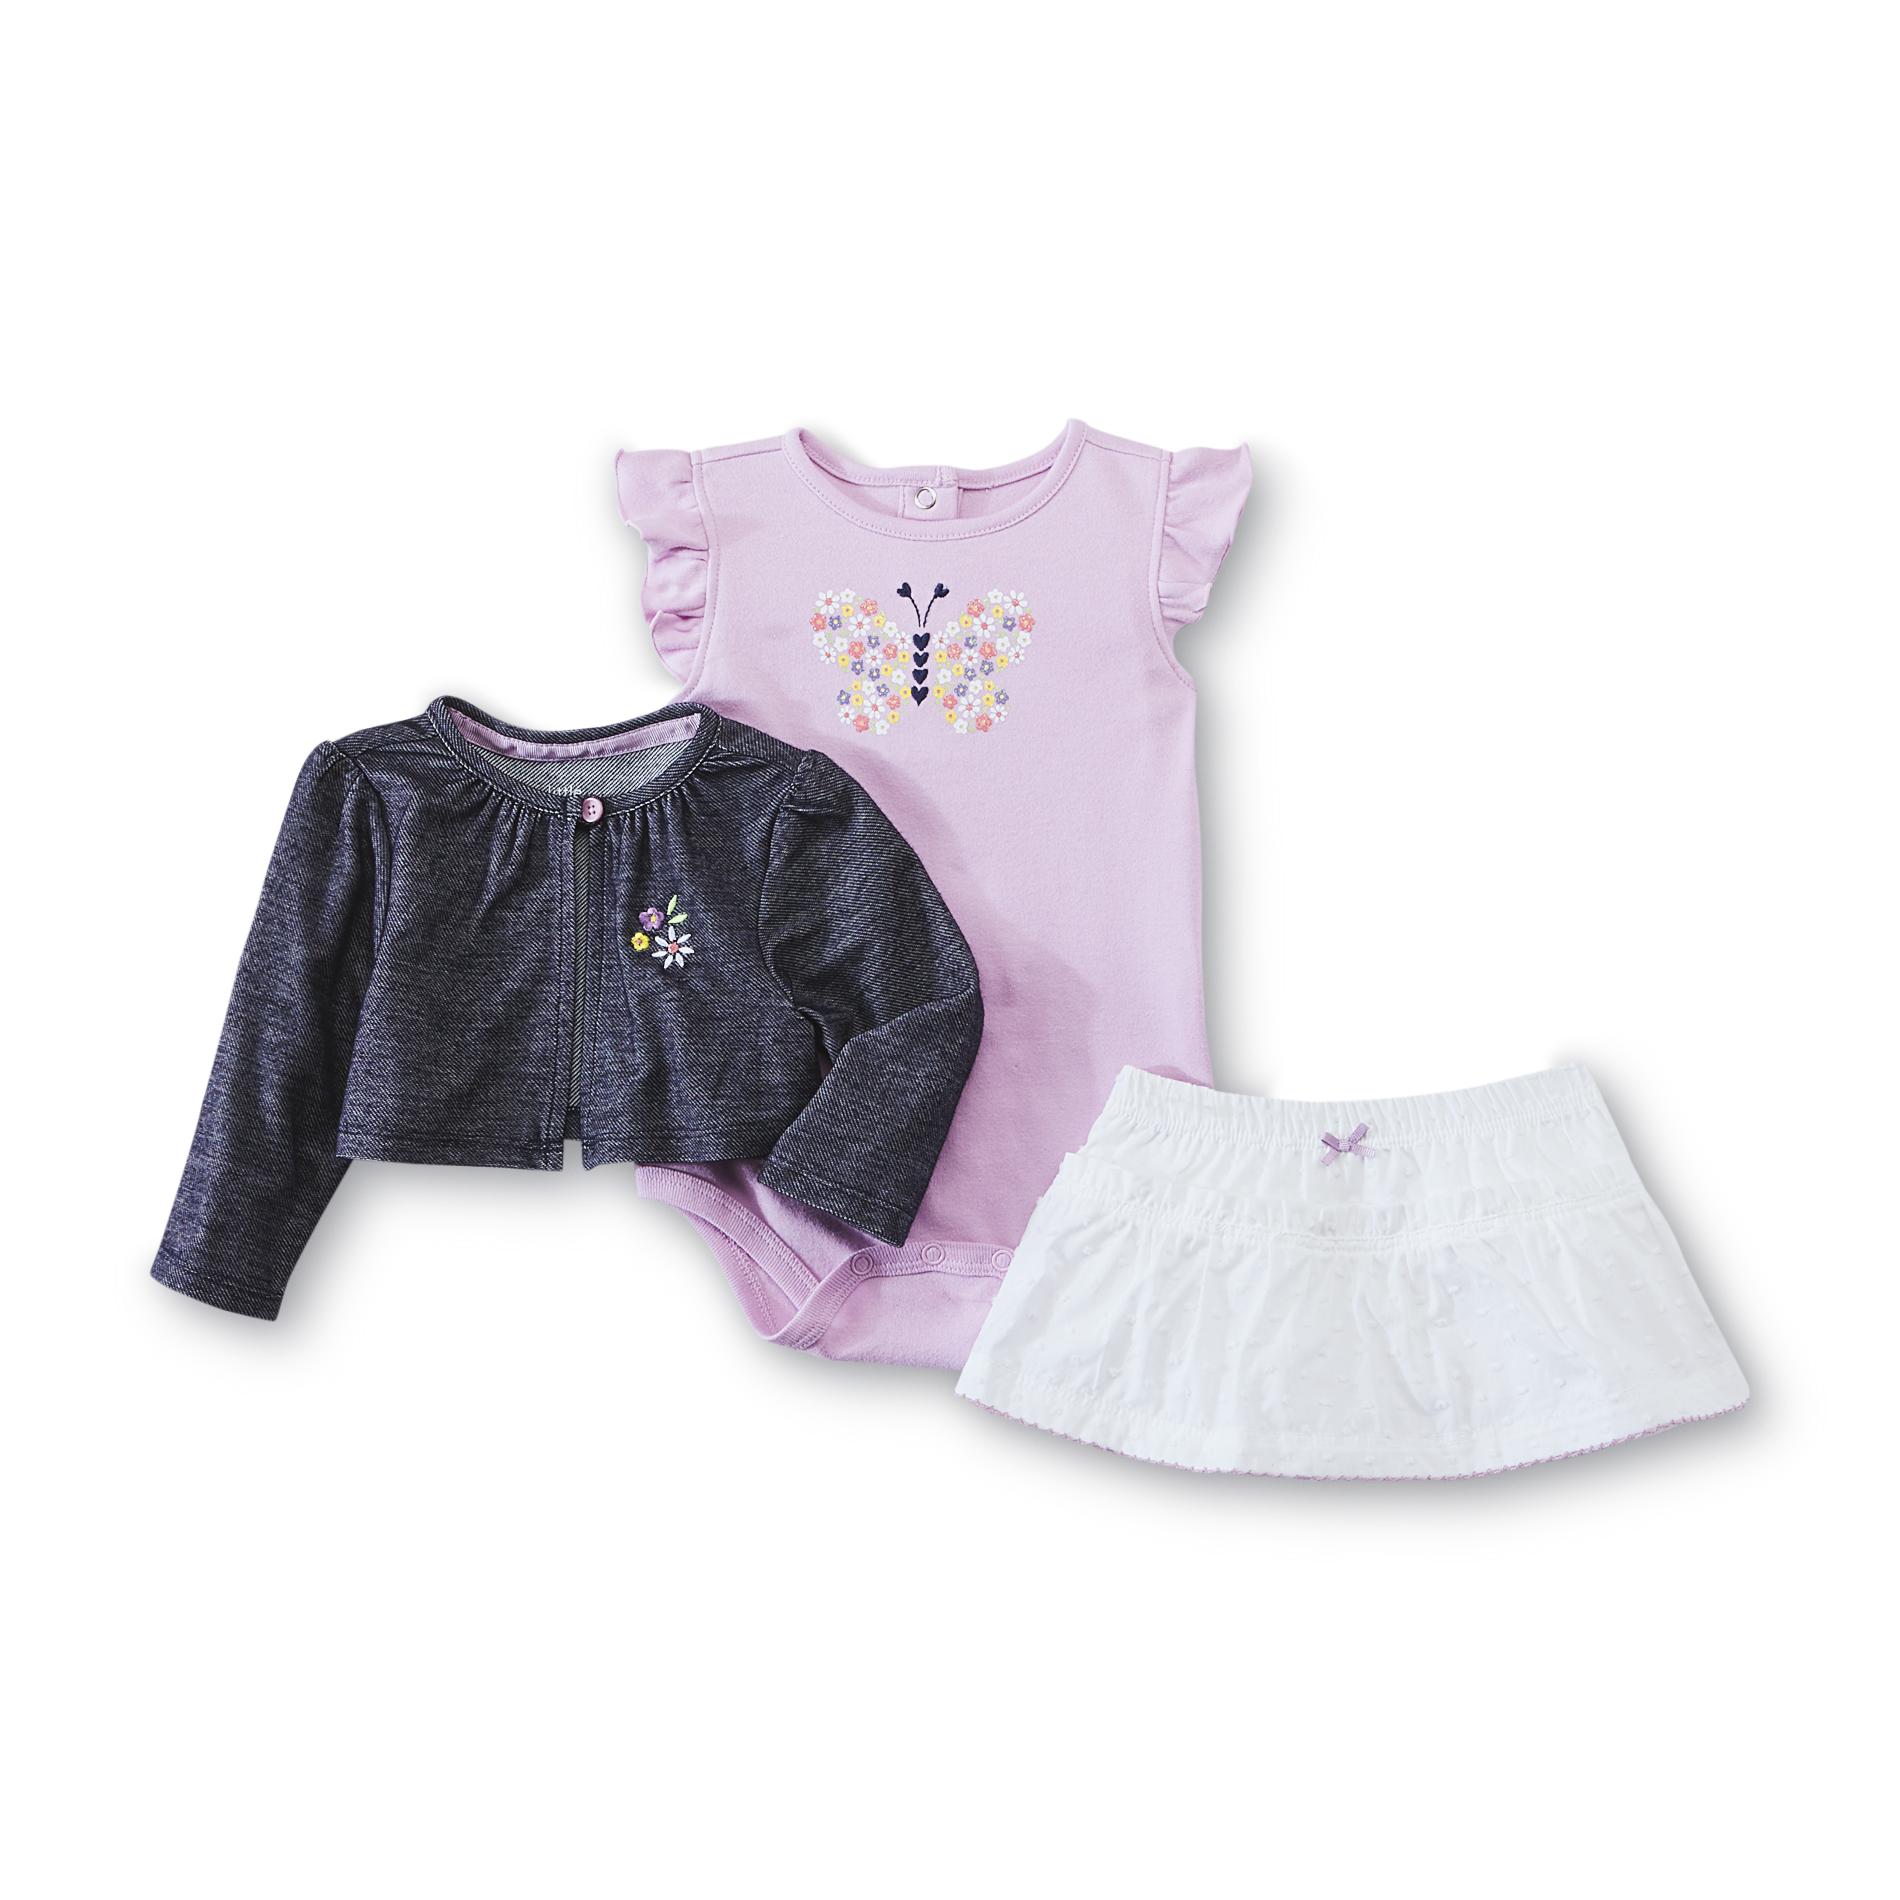 Little Wonders Newborn & Infant Girl's Bodysuit  Shrug & Skirt - Butterfly